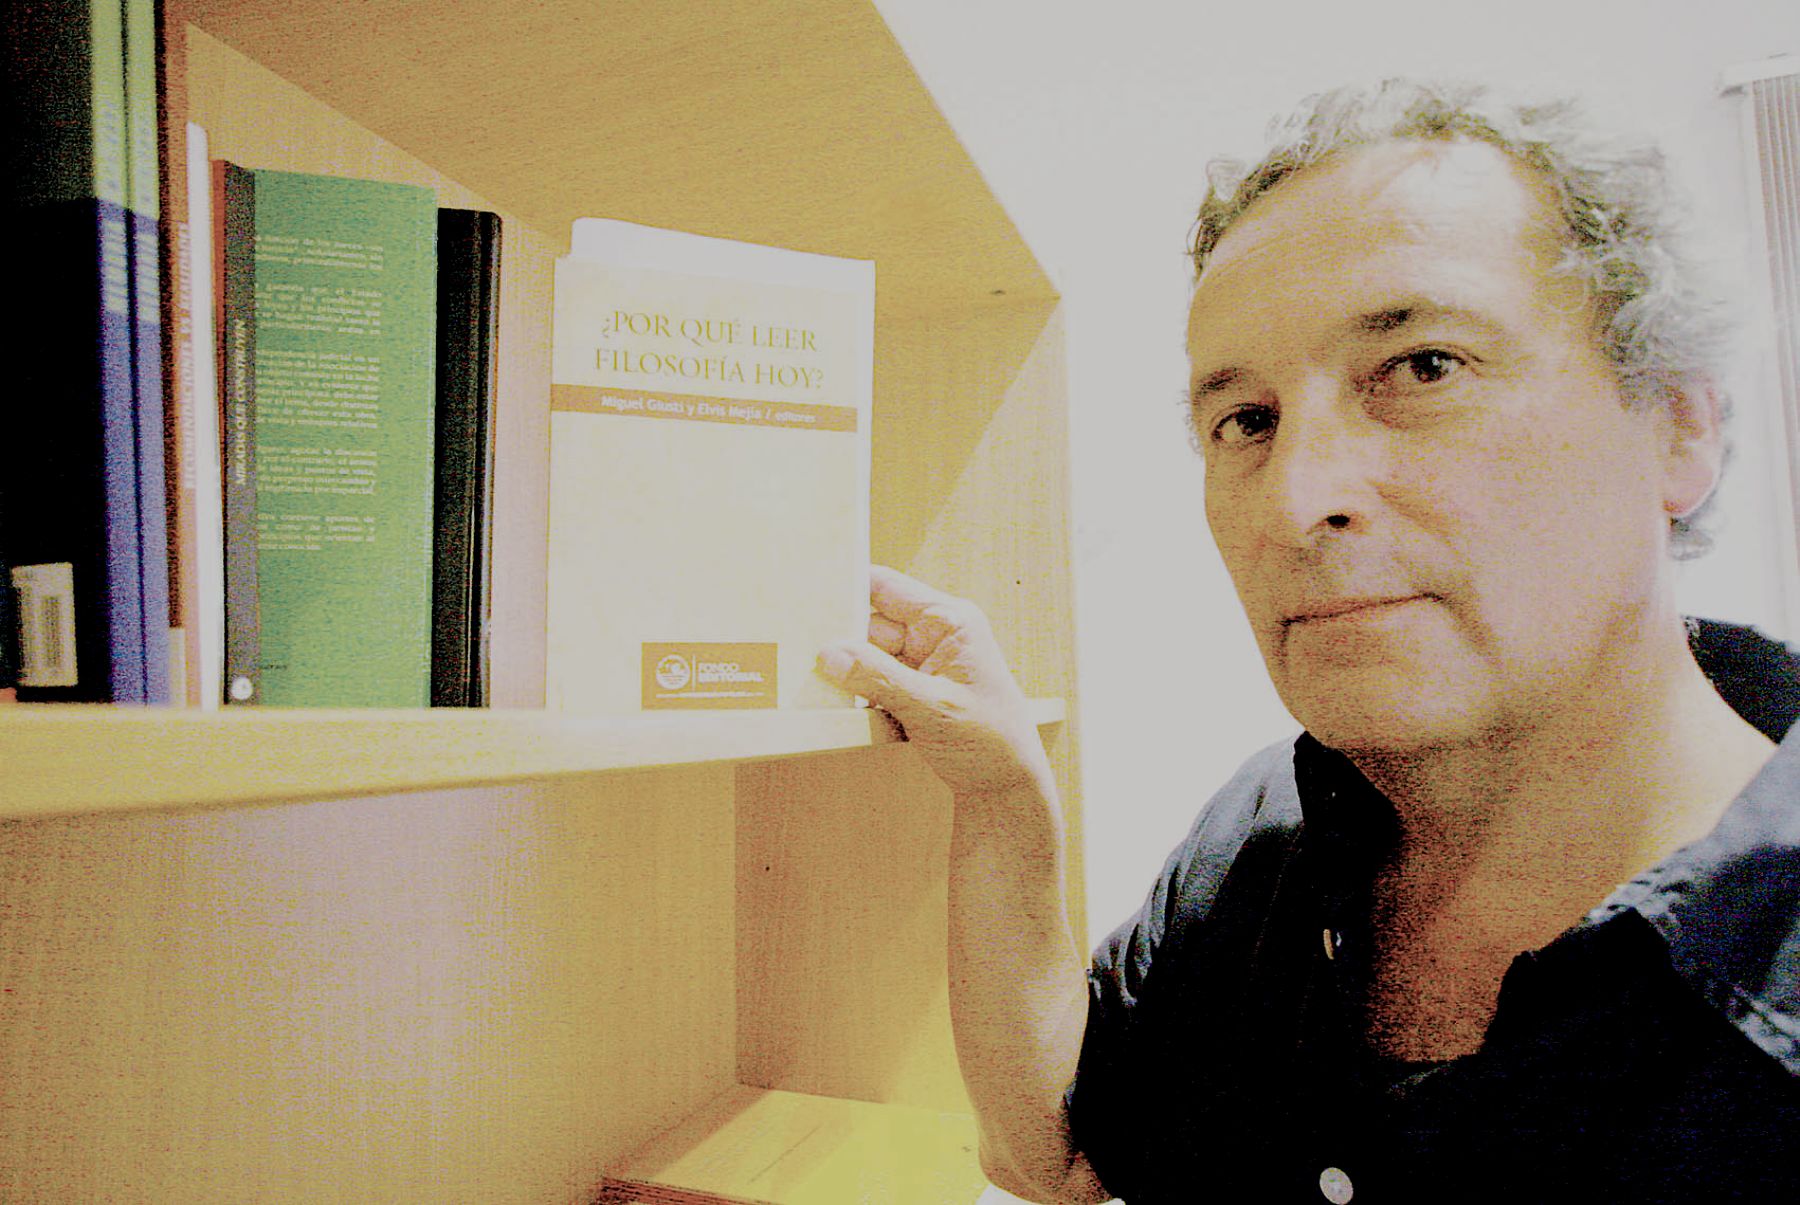 Docente Miguel Susti publica su libro ¿Por qué leer filosofía hoy?. Foto: ANDINA/archivo